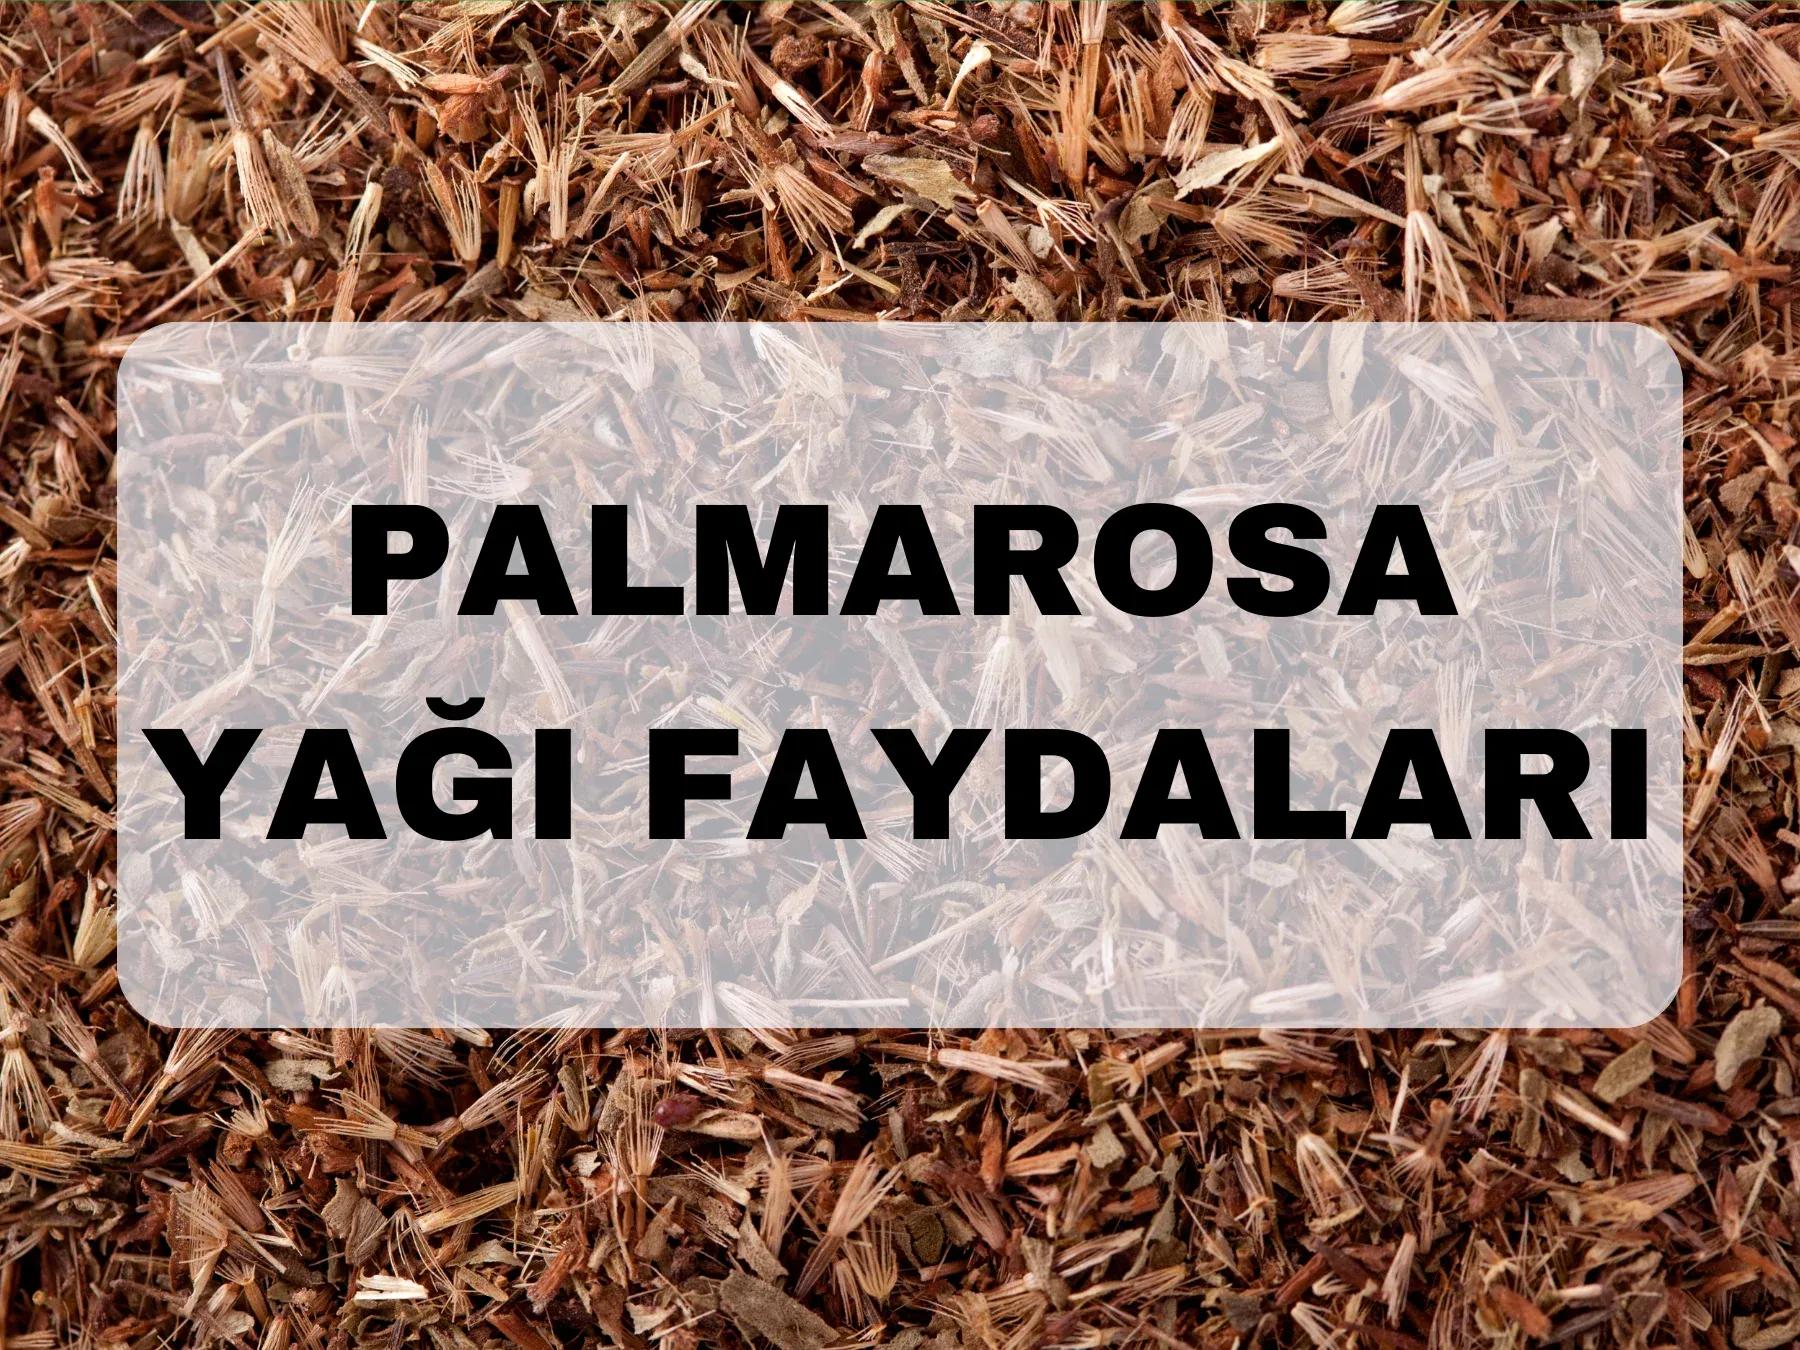 Palmarosa yağı nedir, ne işe yarar?